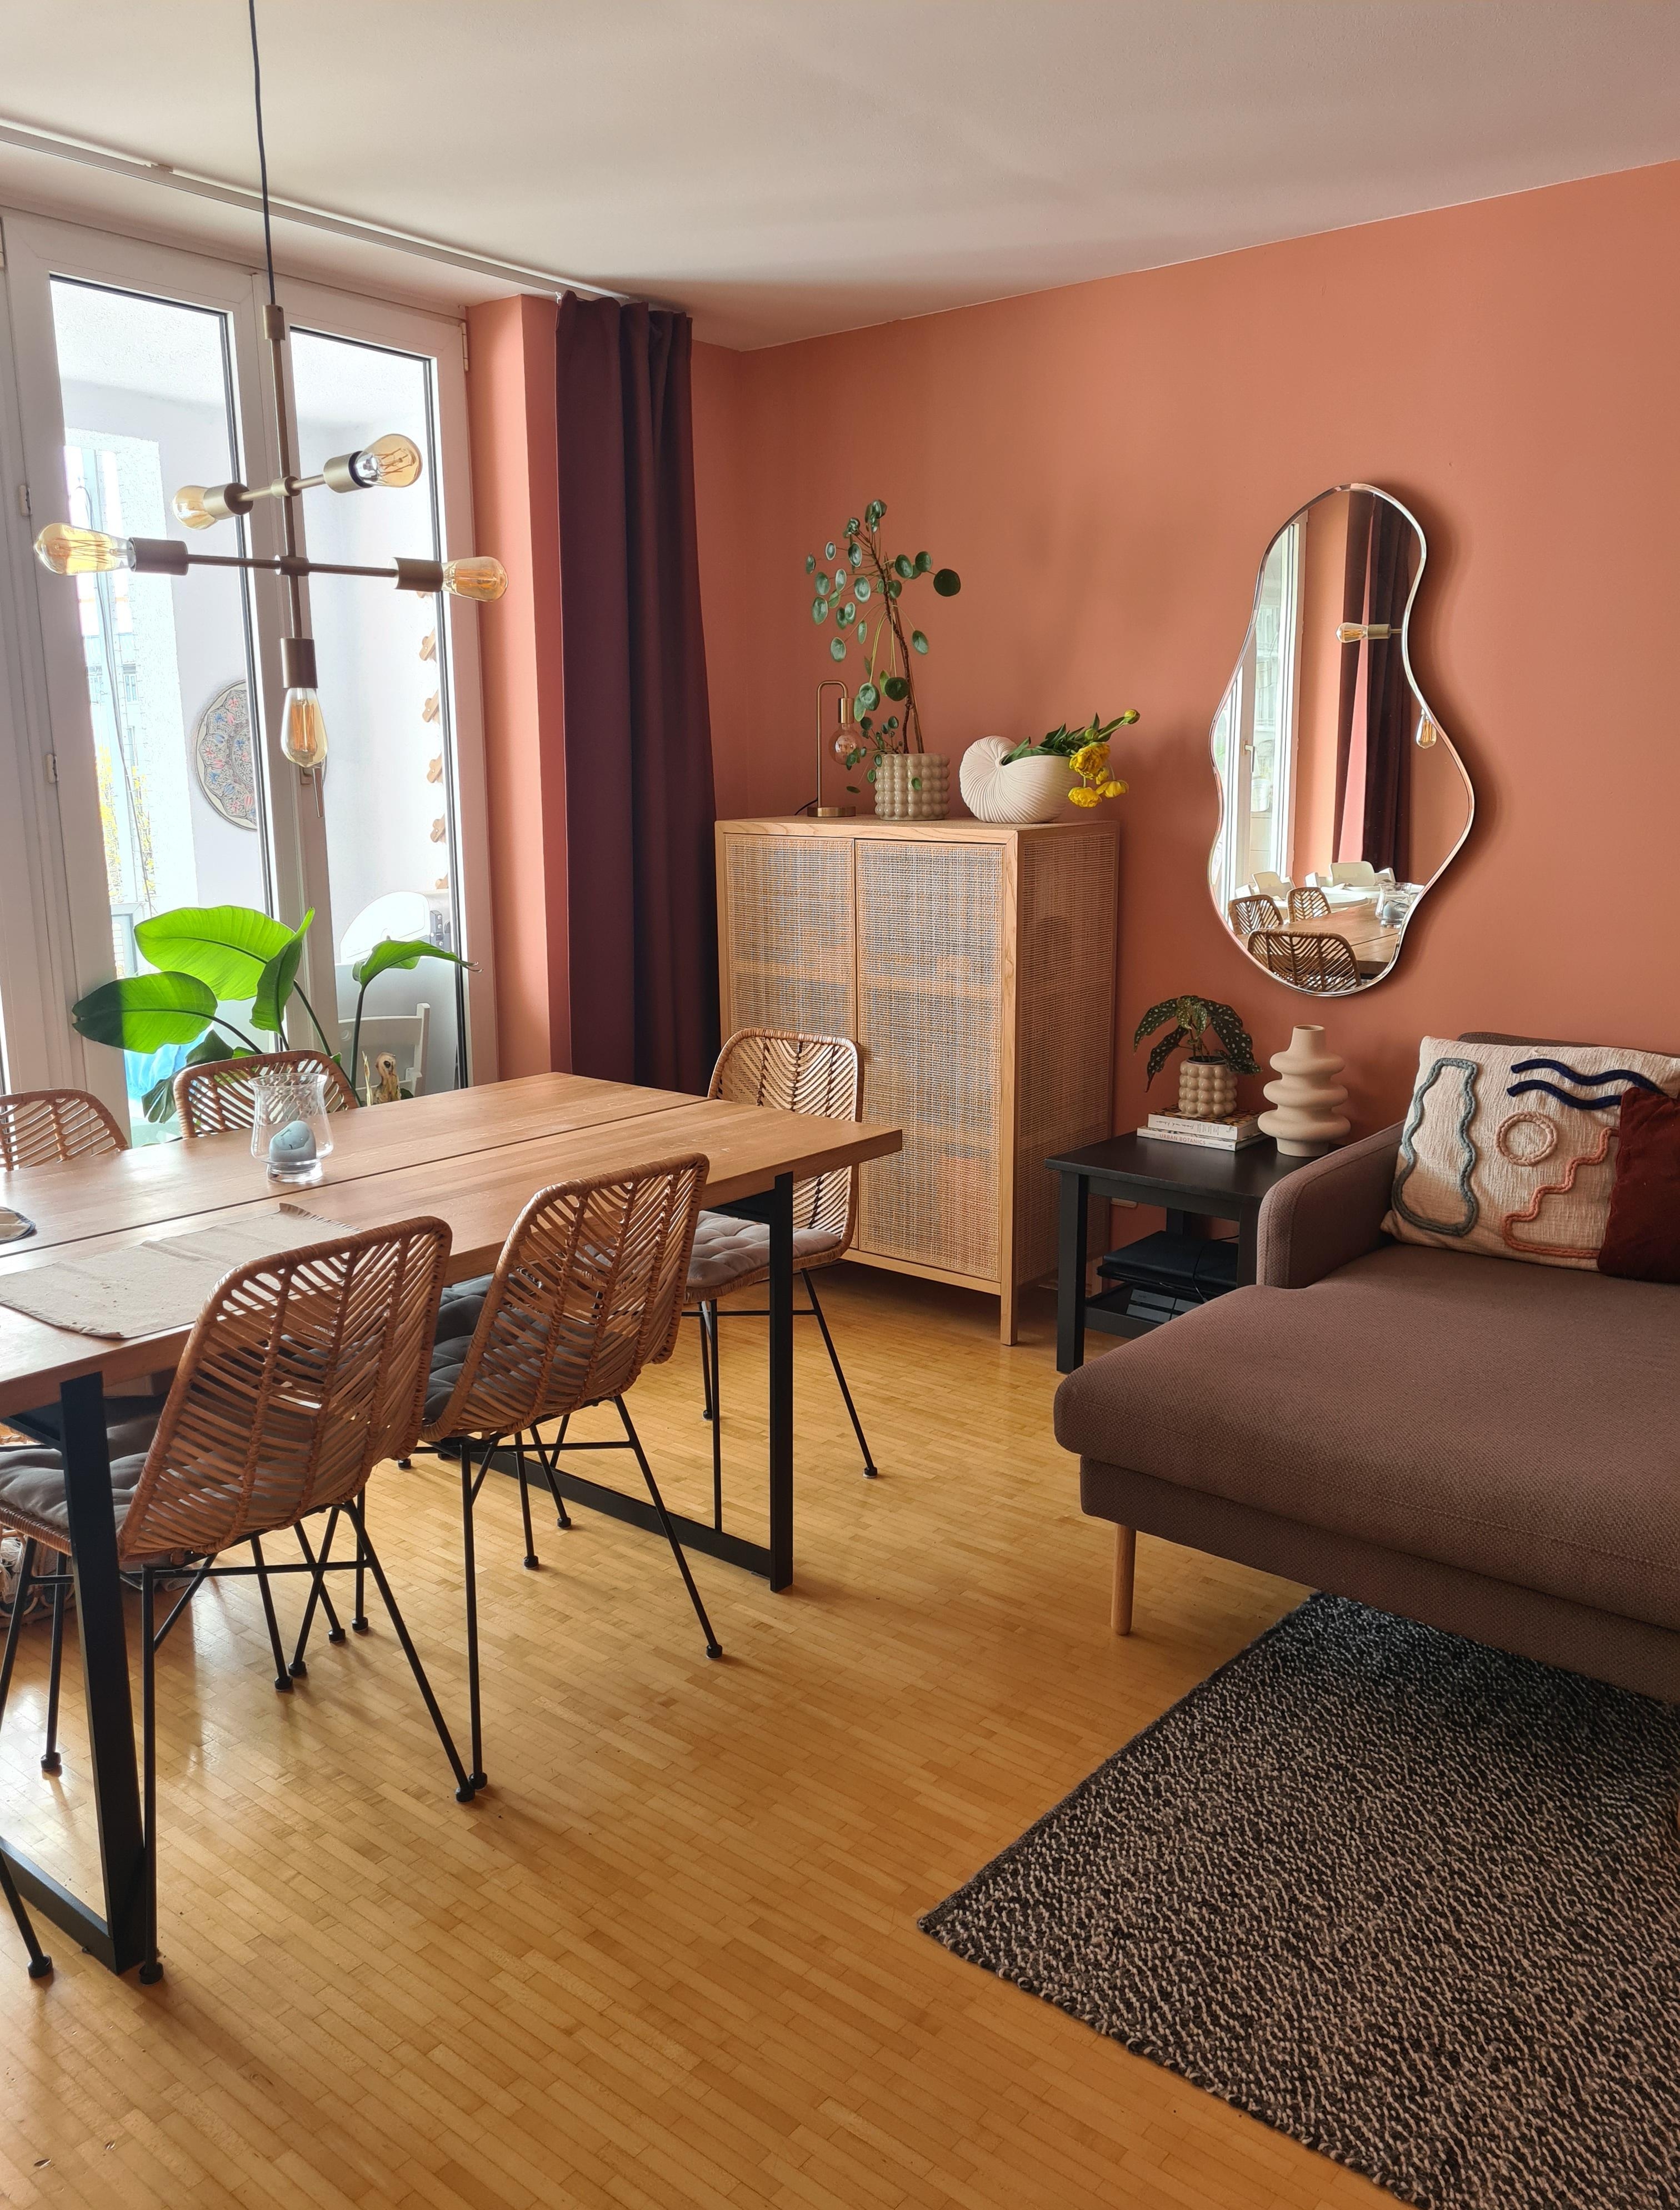 Maisonne im Wohnzimmer 🙌
#esszimmer #wohnzimmer #wandfarbe #esstisch 